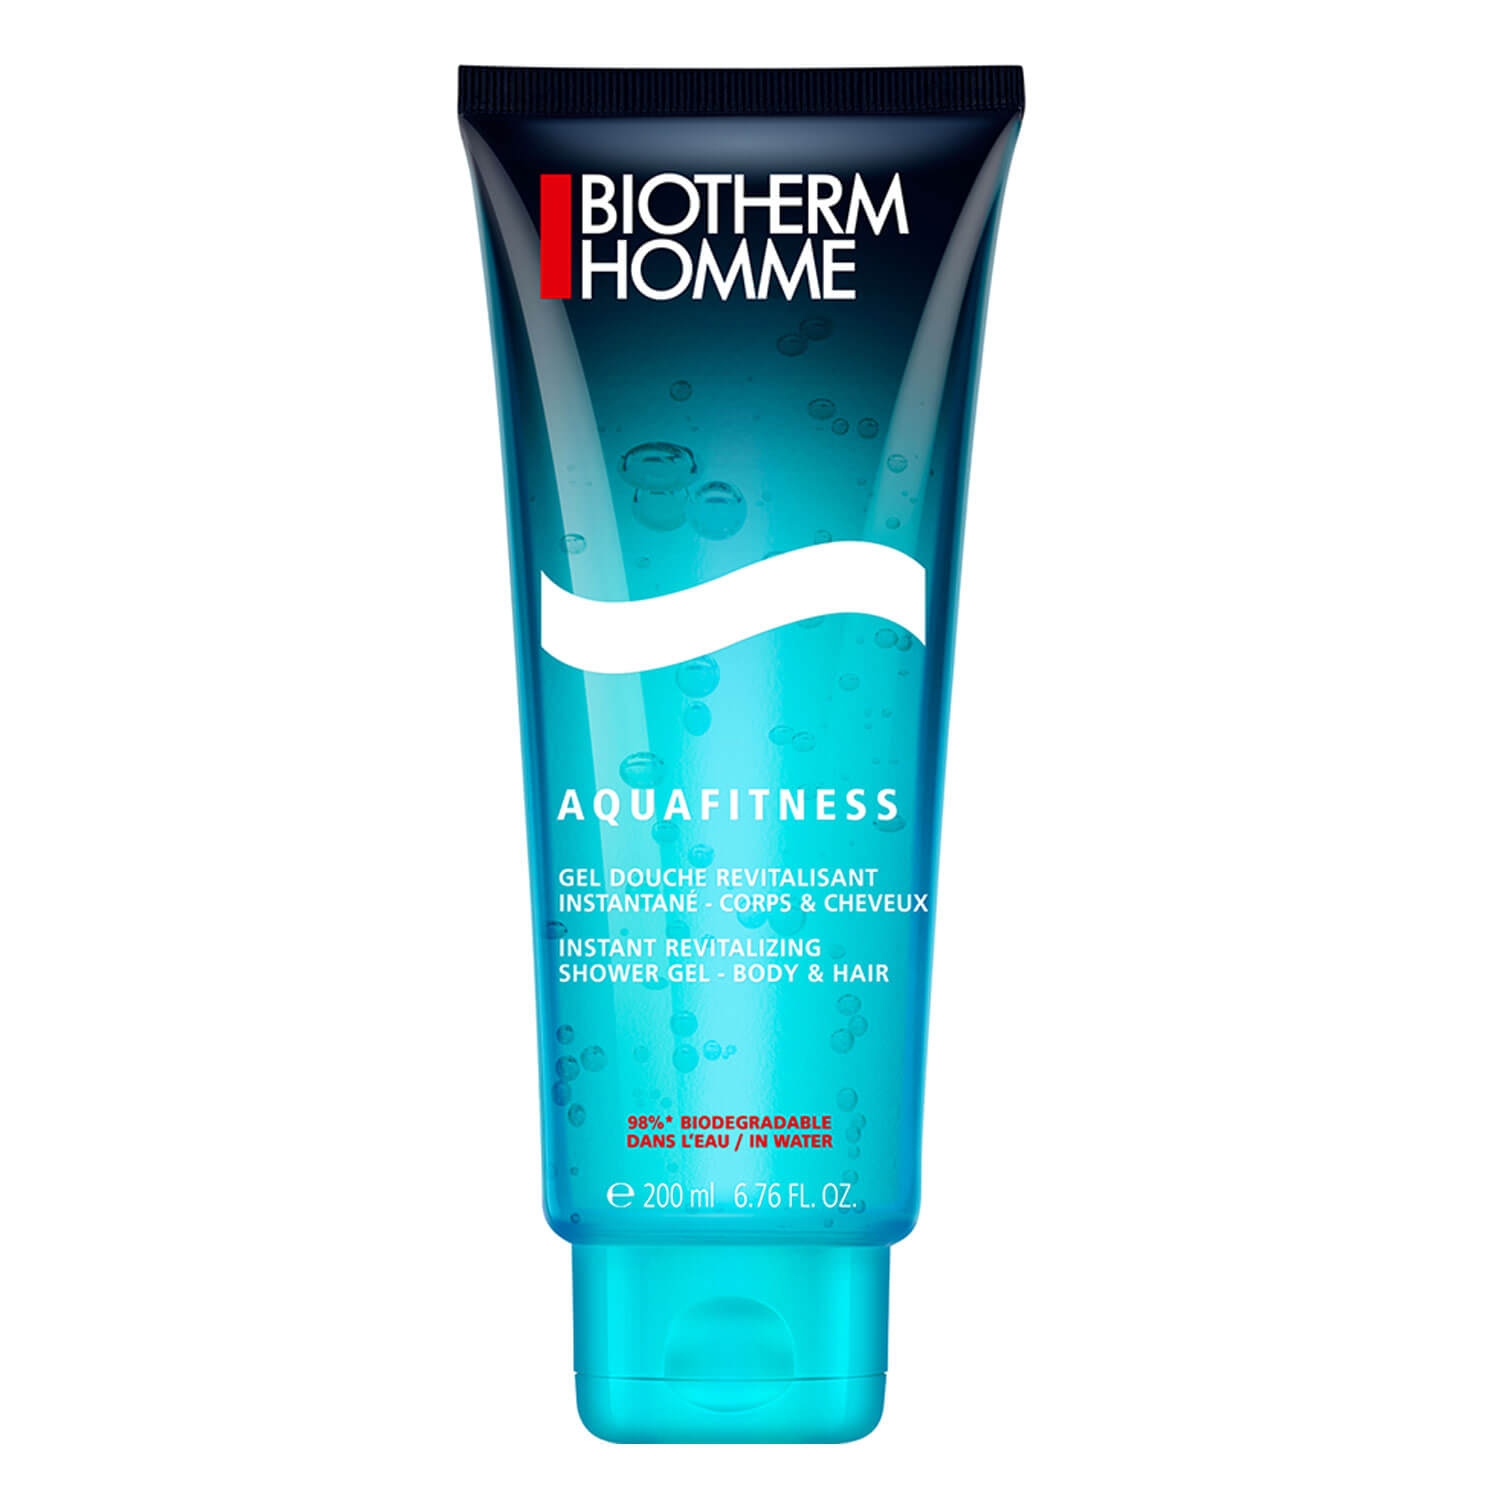 Produktbild von Biotherm Homme - Aquafitness Shower Gel